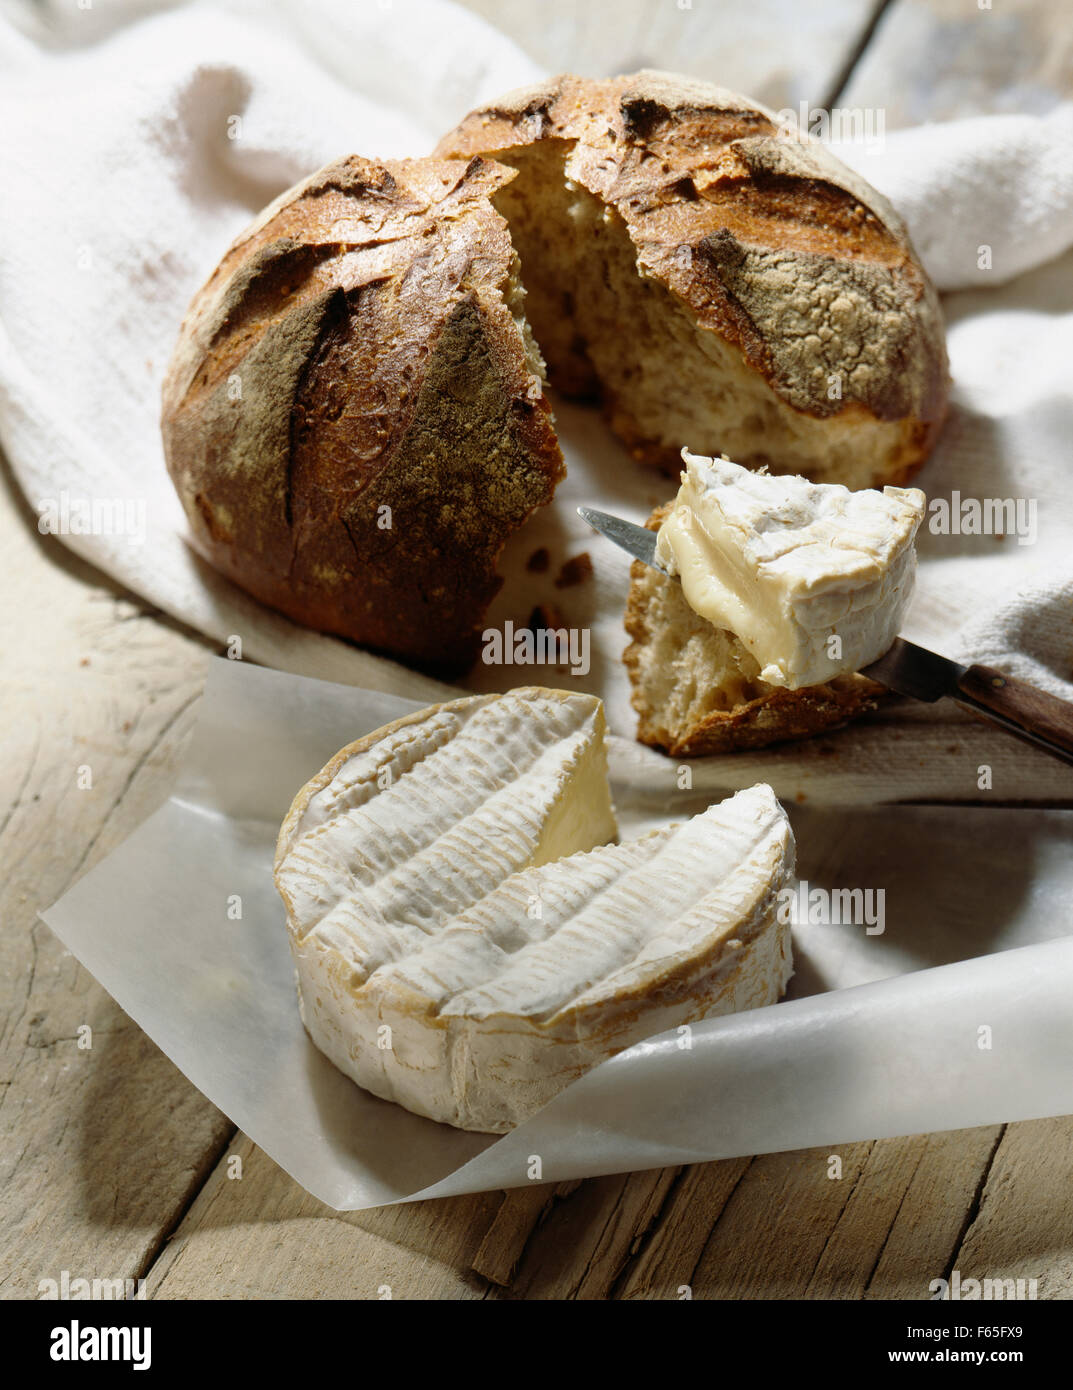 Le Camembert, le pain et le couteau Photo Stock - Alamy